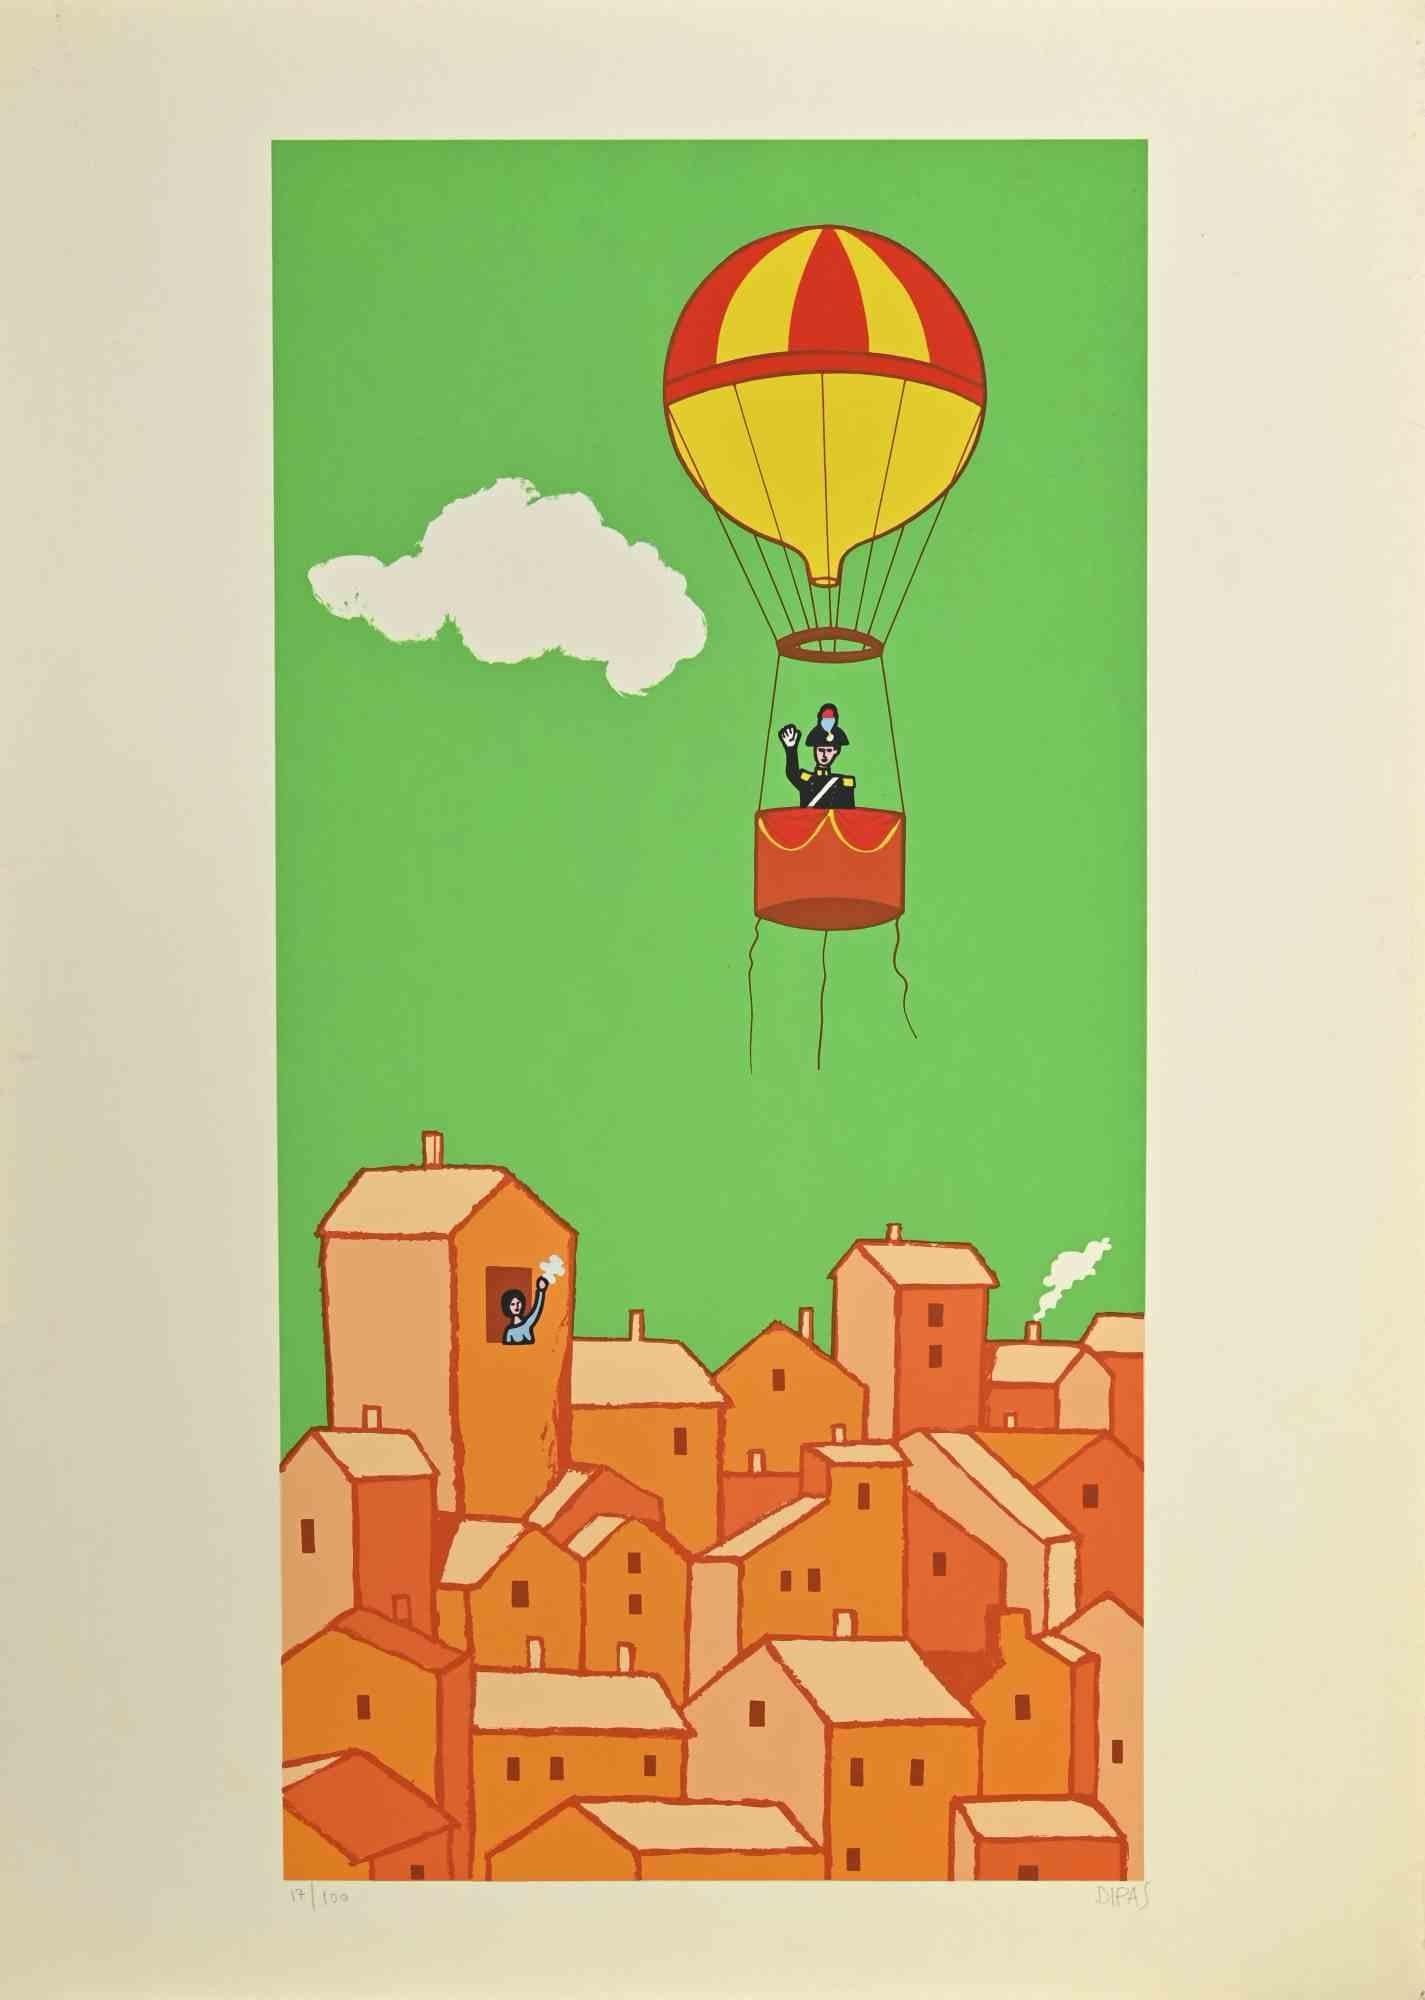 Le salut est une œuvre d'art contemporain réalisée par l'artiste Dipas dans les années 1970.

Sérigraphie de couleurs mélangées.

Signé à la main dans la marge inférieure droite.

Numéroté dans la marge inférieure gauche.

Édition de 17/100.

Papier